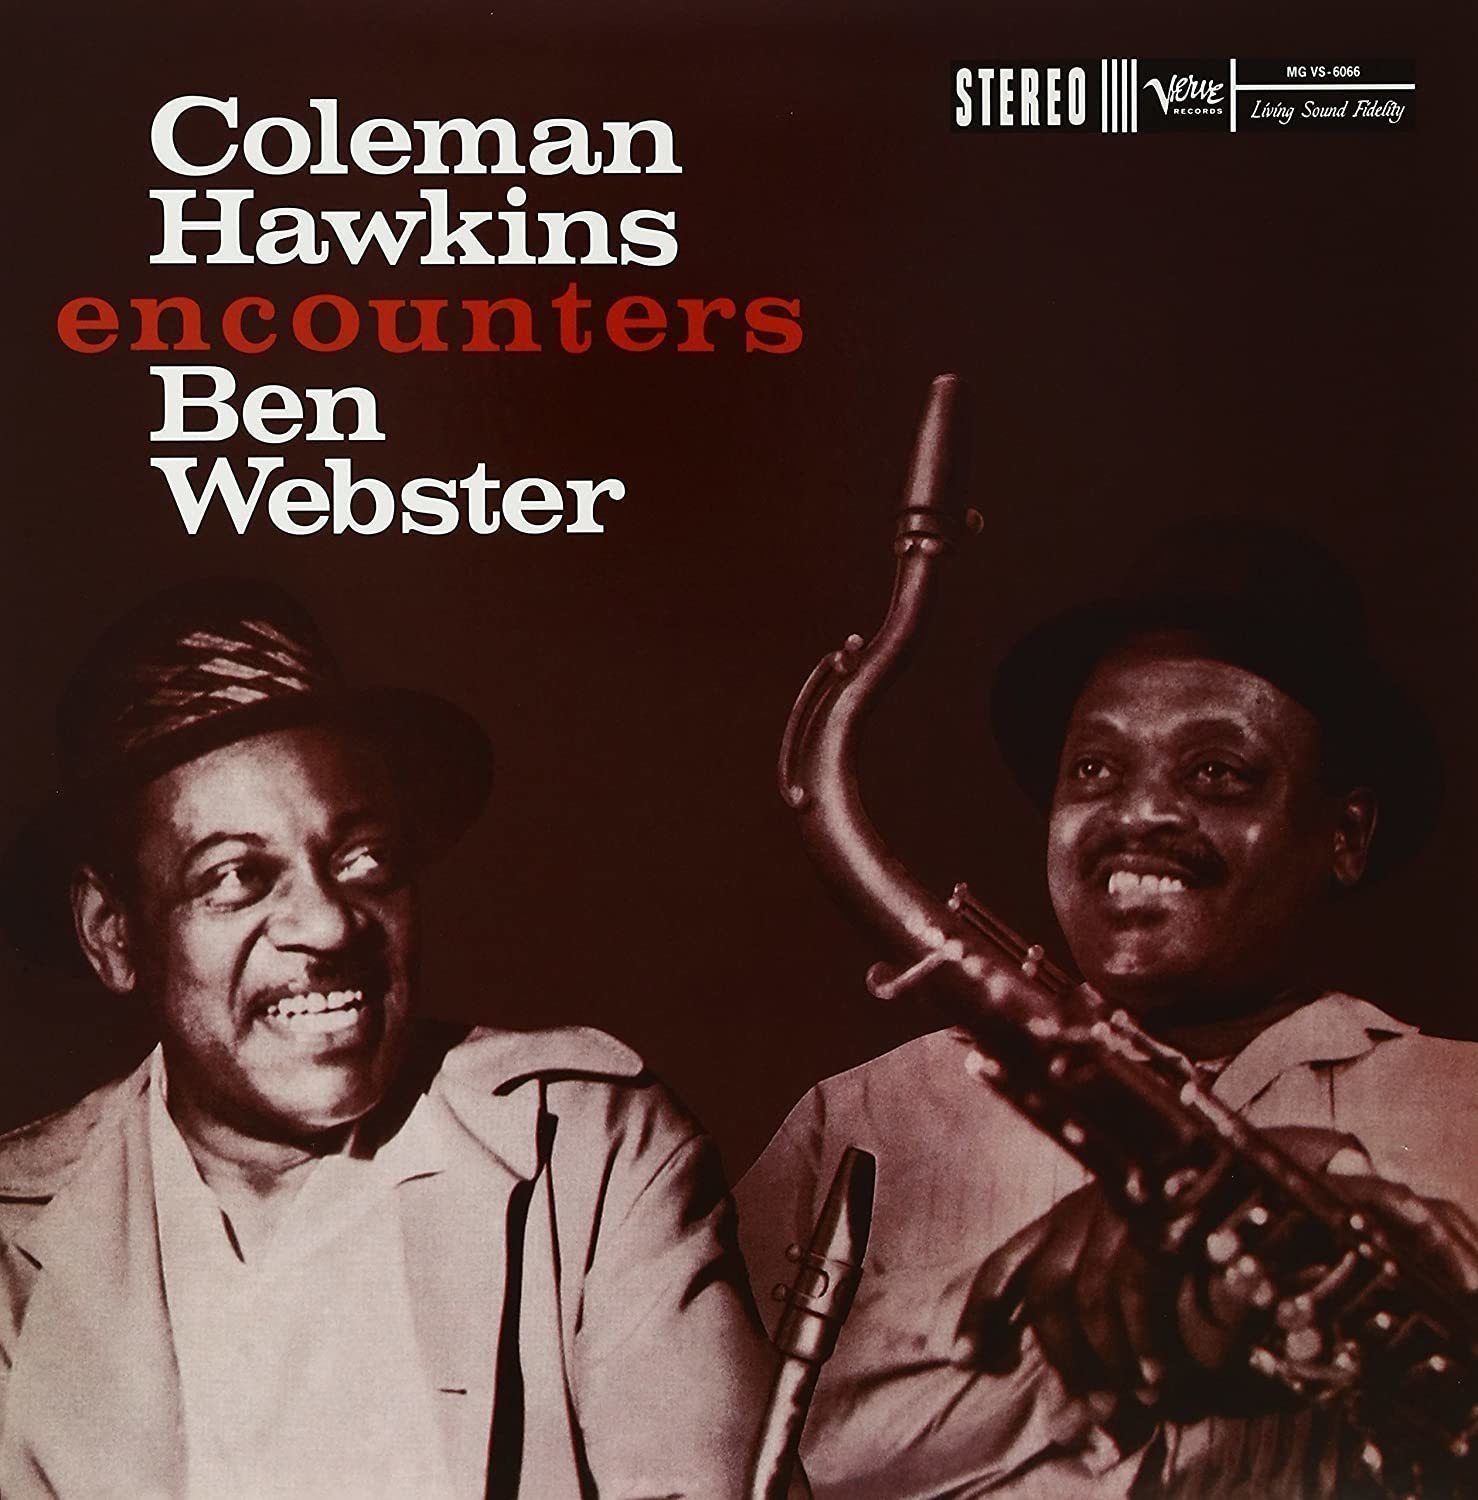 Vinyl Record Coleman Hawkins - Encounters Ben Webster (Remastered) (2 x 12" Vinyl)